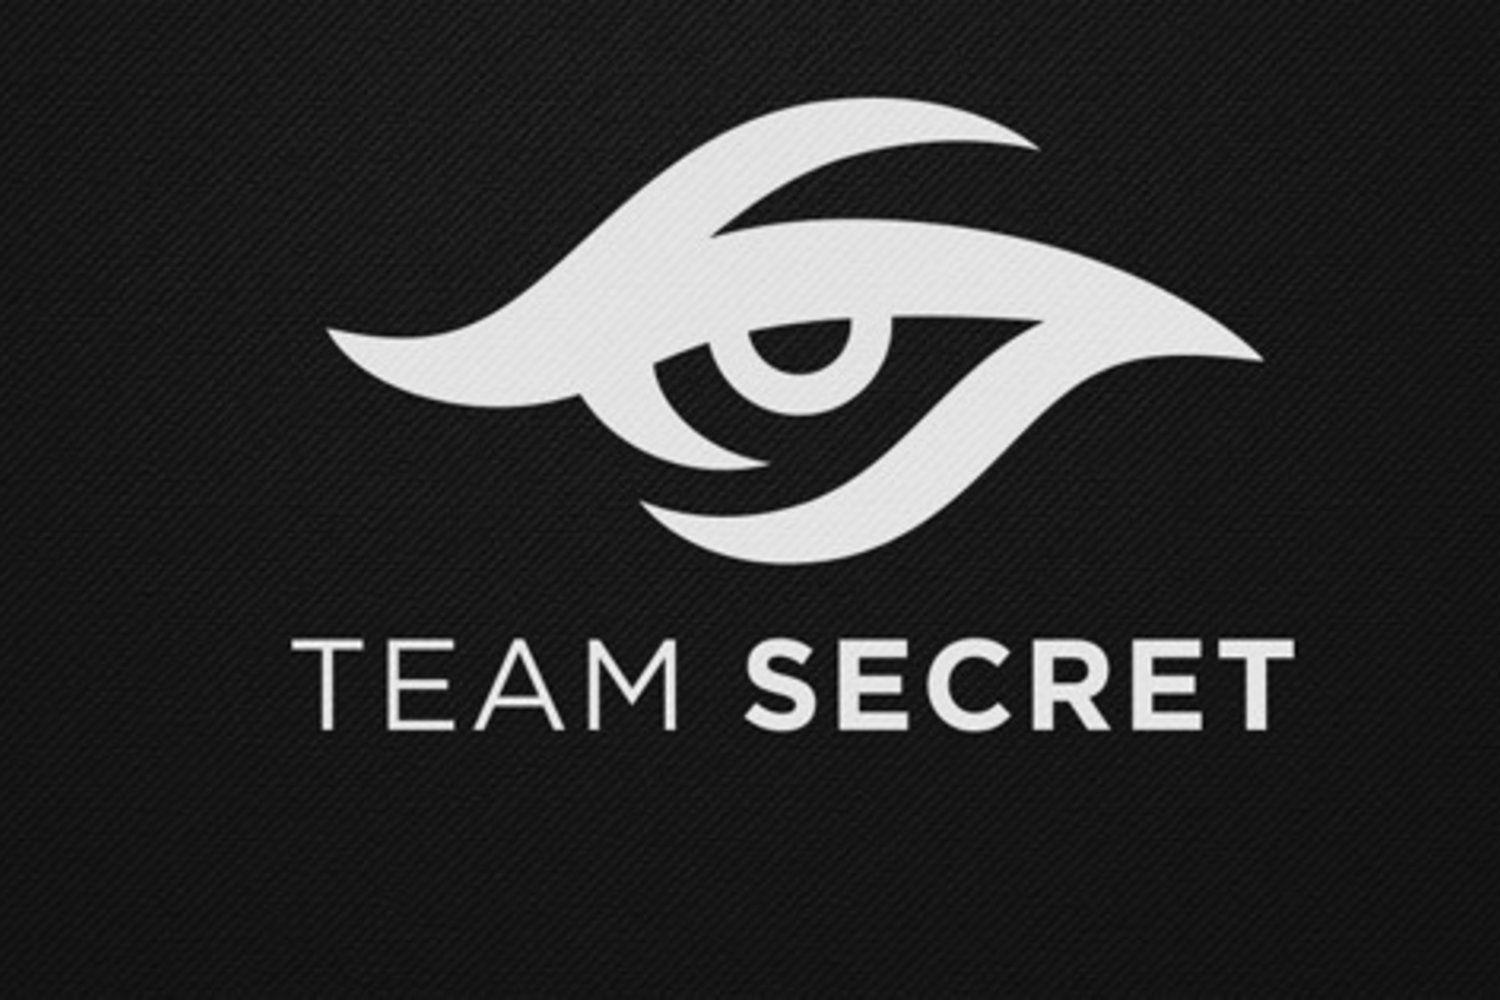 Secret Logo - Team Secret's